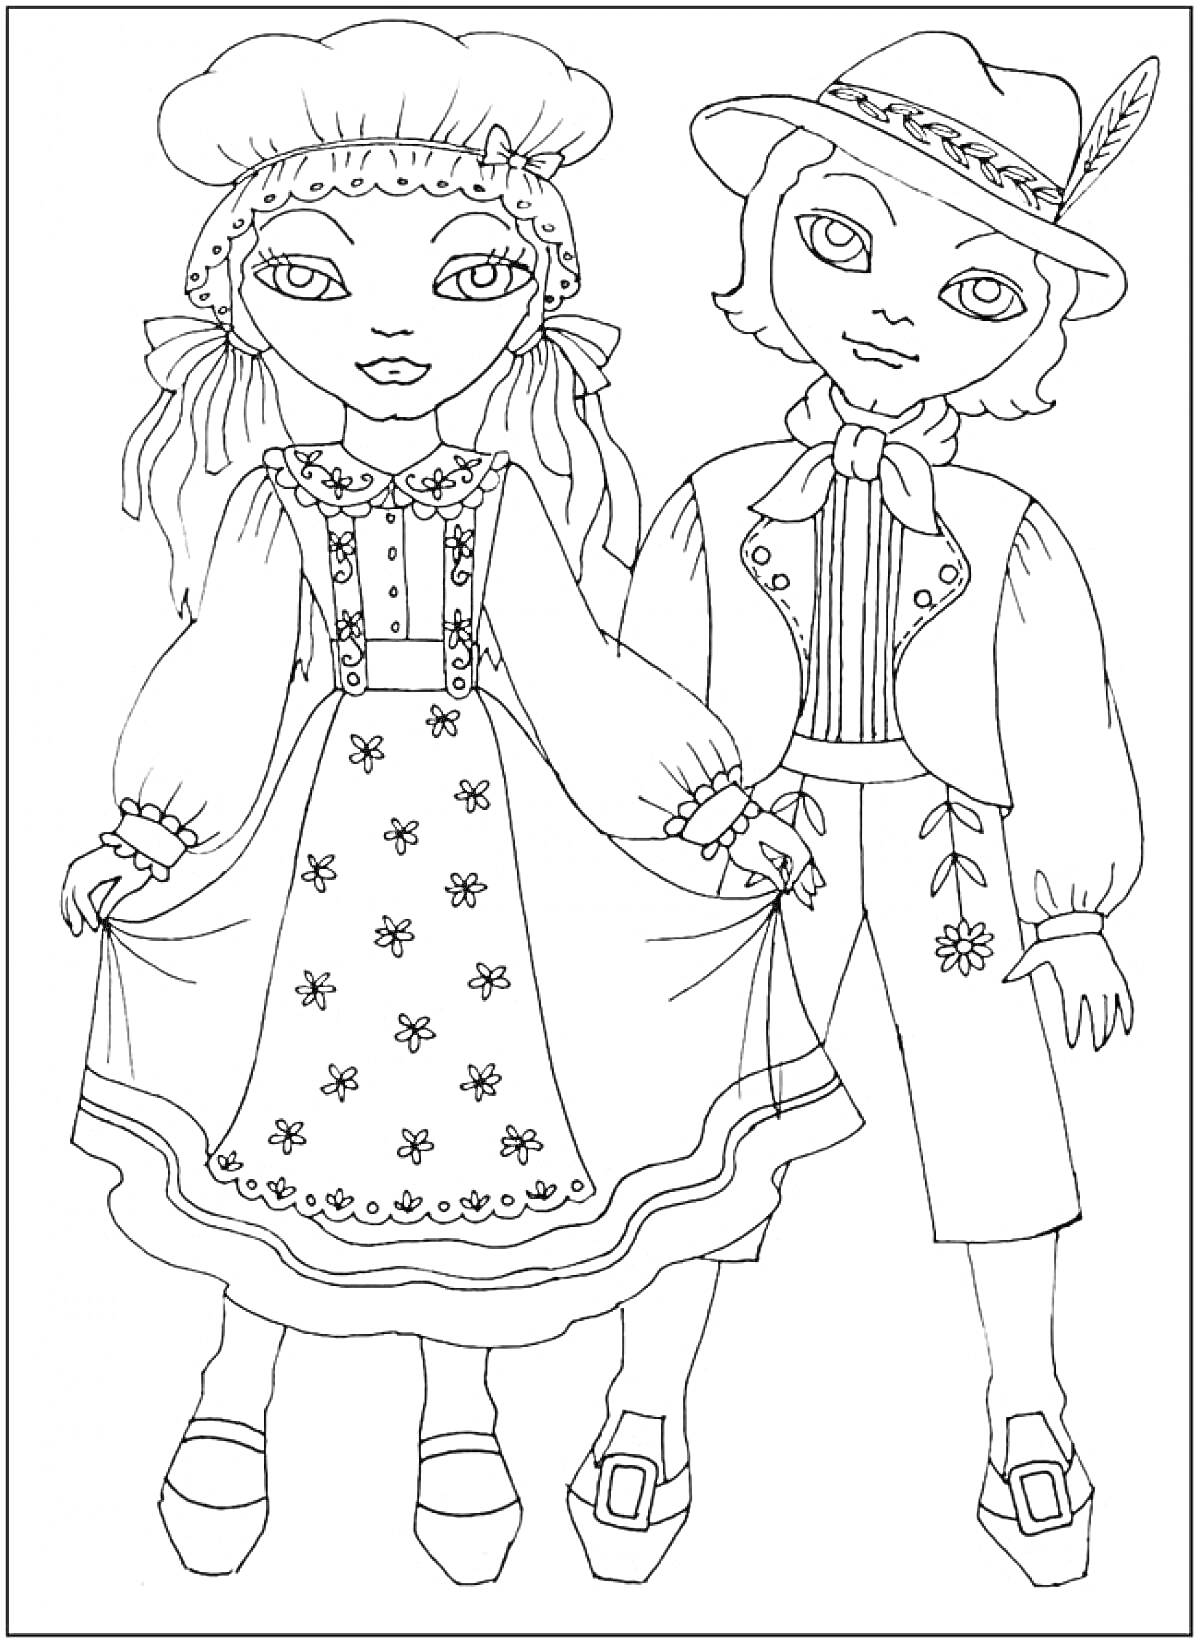 Раскраска Дети в традиционных костюмах. Ребенок слева в платье с передником и чепчиком, ребенок справа в жилете, шляпе с пером и брюках с вышивкой.